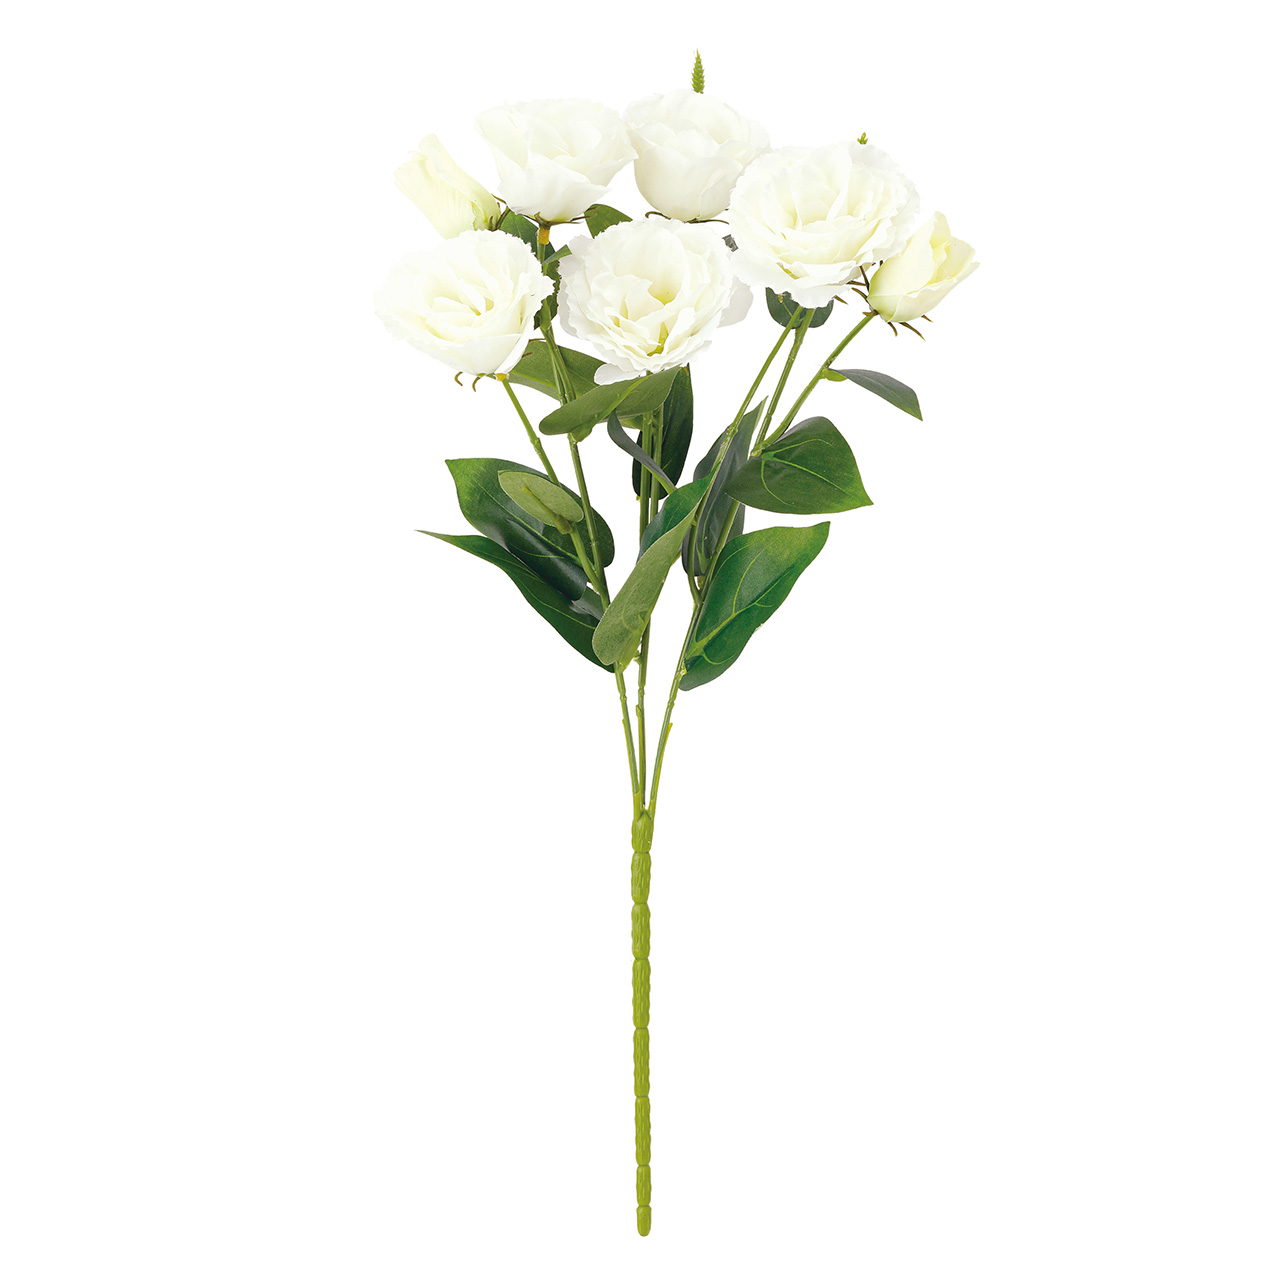 マイフラ 通販 Magiq リシアンサスブッシュ ホワイトグリーン アーティフィシャルフラワー 造花 リシアンサス トルコキキョウ Fm0036 001 ホワイトグリーン Magiq アーティフィシャルフラワー 造花 全国にmagiq 花器 花資材などをお届けします